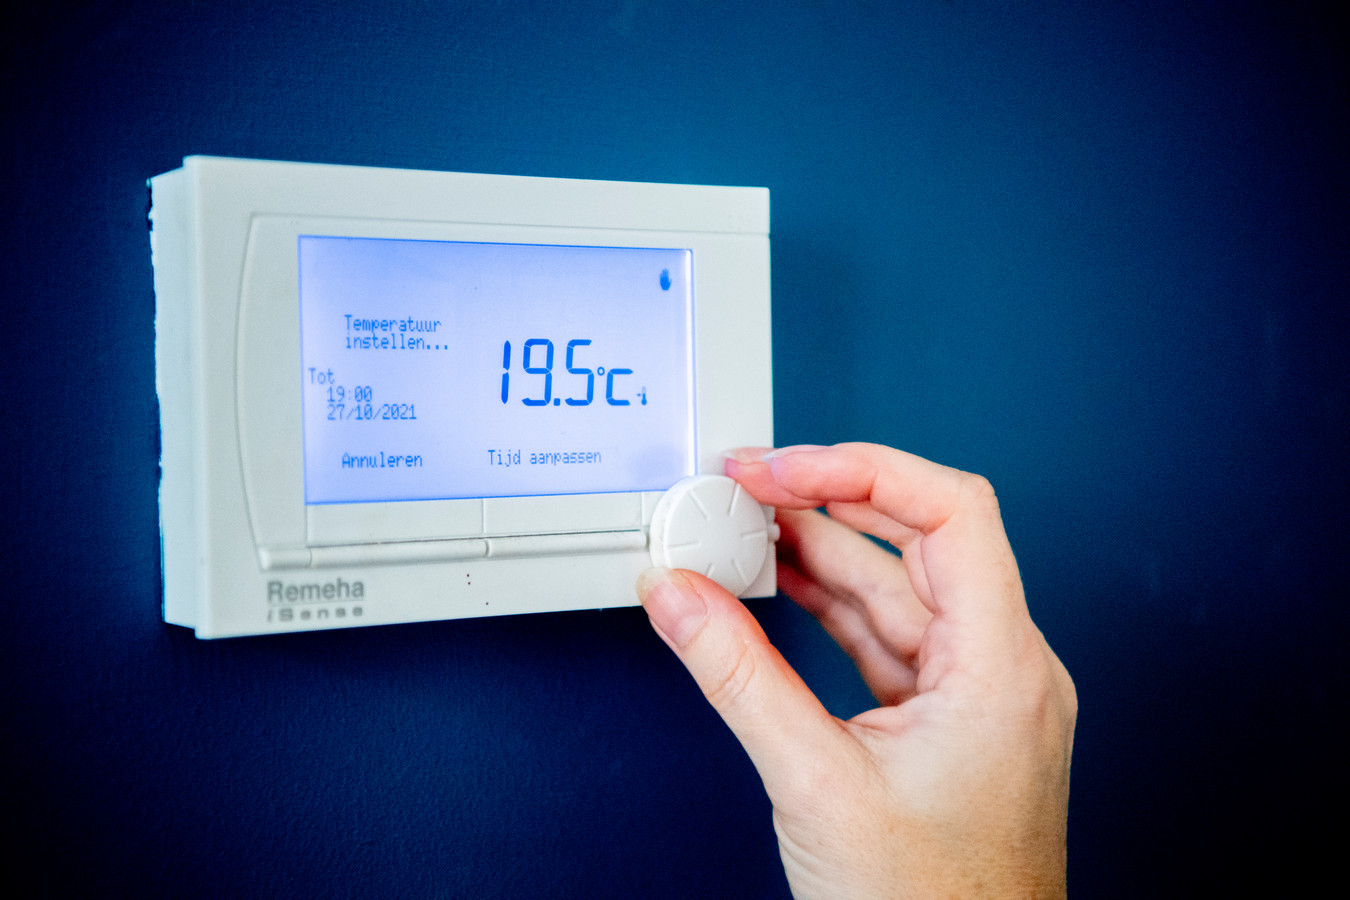 De thermostaat hoeft niet direct omlaag, nu de energieprijzen stijgen.